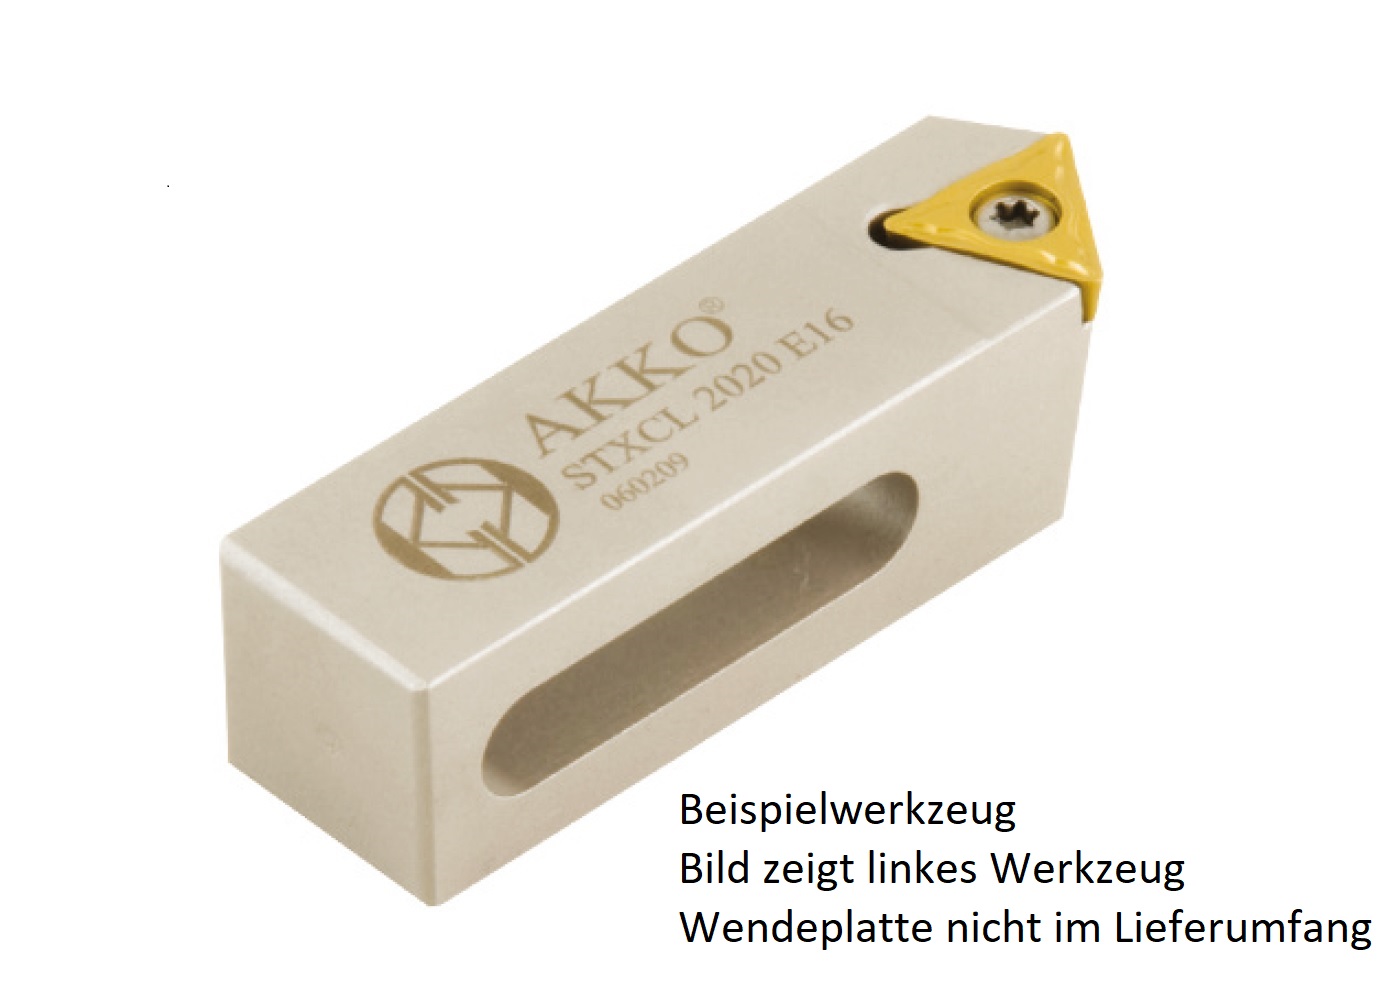 AKKO-Kurzdrehhalter 20 x 10 mm für ISO-WSP TC.. 16T3..
rechts